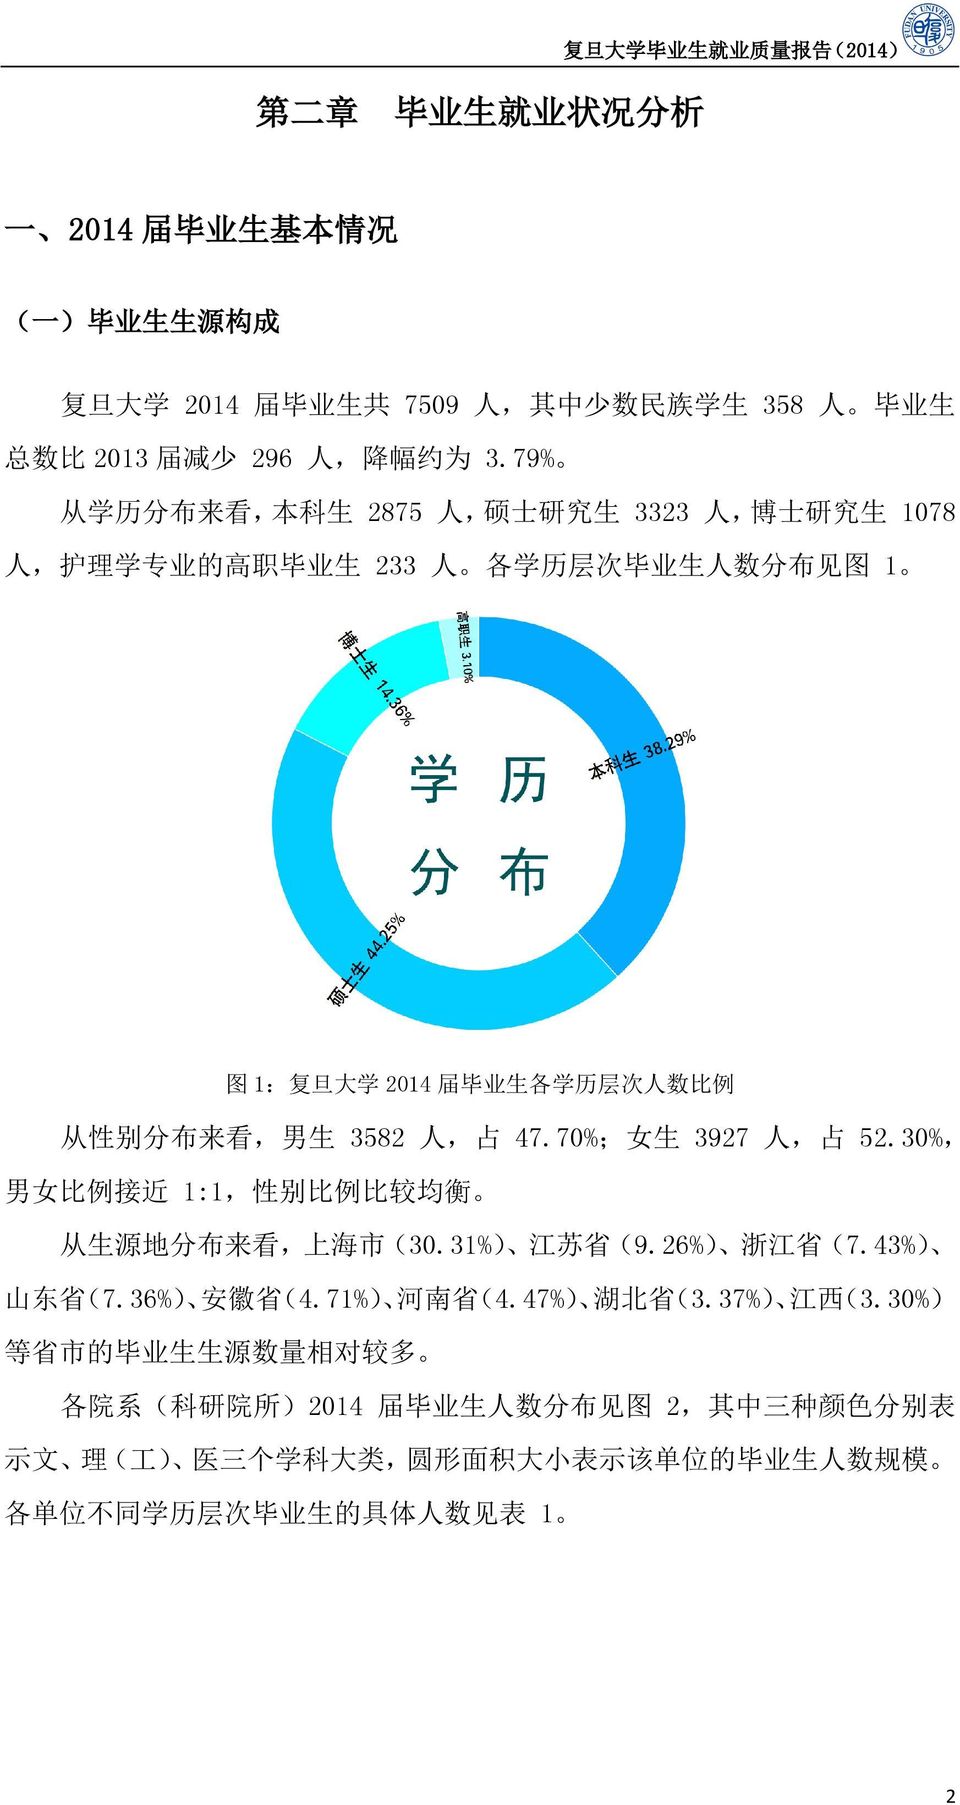 人, 占 47.70%; 女 生 3927 人, 占 52.30%, 男 女 比 例 接 近 1:1, 性 别 比 例 比 较 均 衡 从 生 源 地 分 布 来 看, 上 海 市 (30.31%) 江 苏 省 (9.26%) 浙 江 省 (7.43%) 山 东 省 (7.36%) 安 徽 省 ( 4.71%) 河 南 省 (4.47%) 湖 北 省 ( 3.37%) 江 西 ( 3.